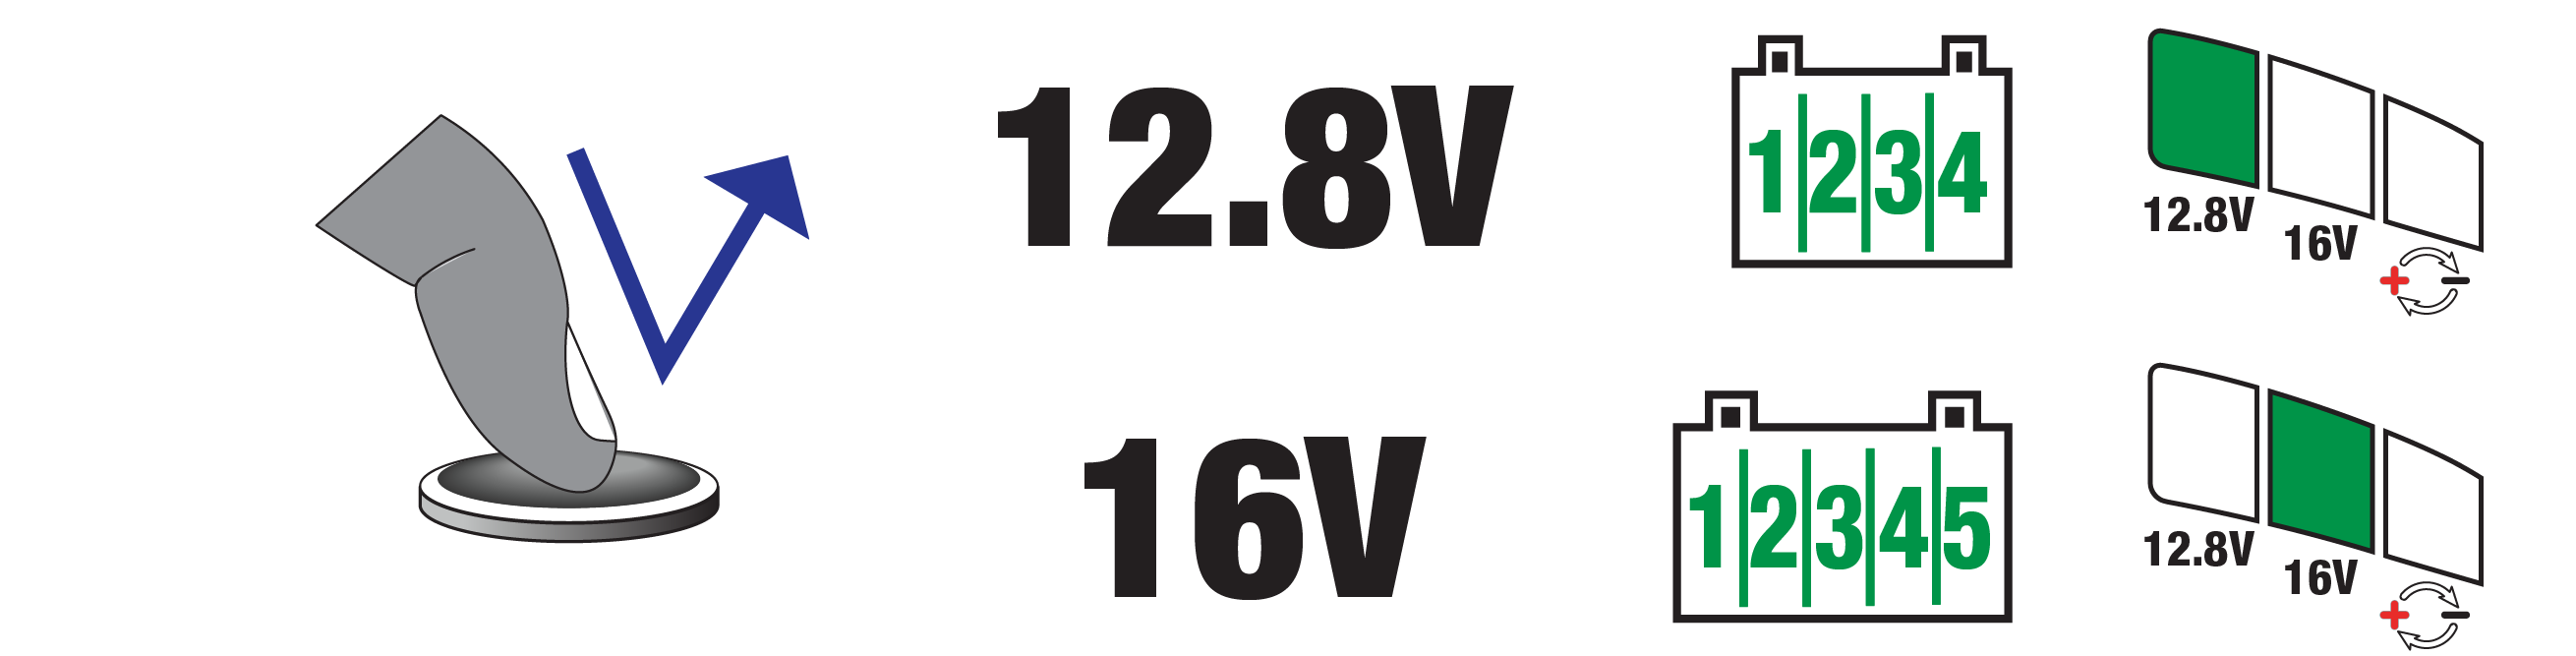 Met de OptiMate Lithium LFP Select selecteert u een laadvoltage tussen 12.8V en 16V.